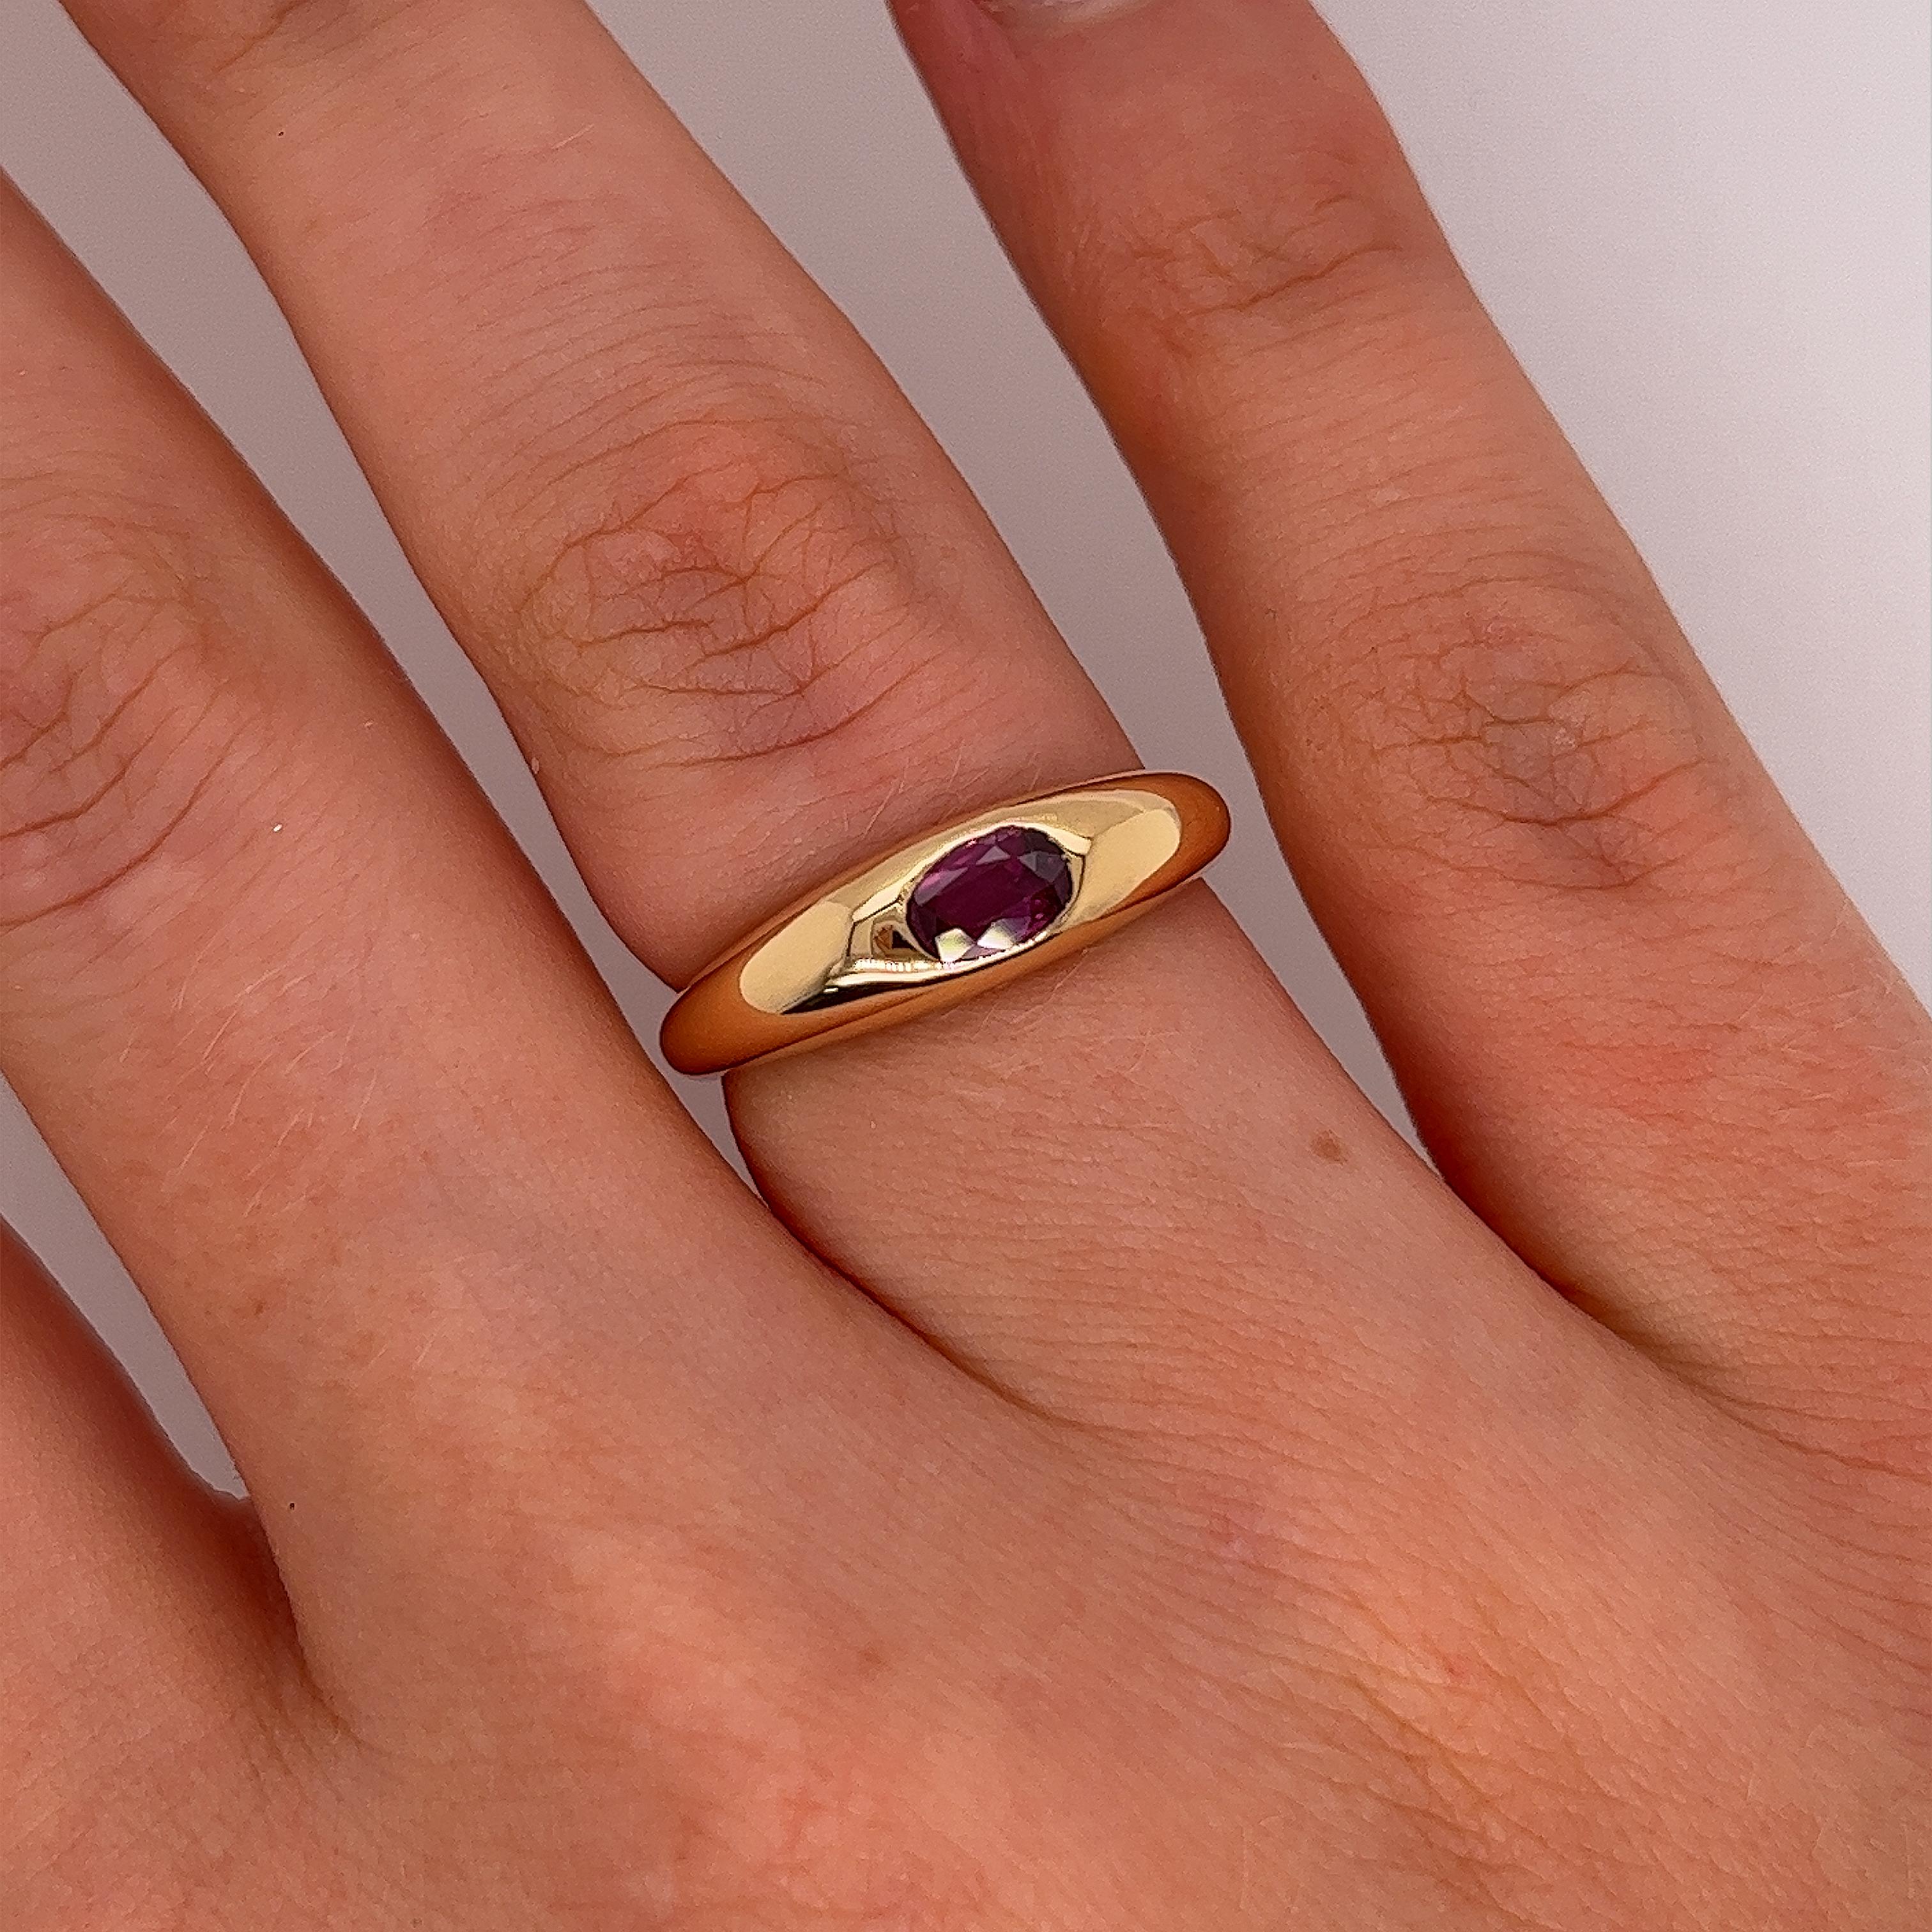 Neu von Jewellery Cave aus 18 Karat Gelbgold 
Single Stone Ring, besetzt mit einem ovalen 0,40ct Naturrubin in bester Qualität,
Der Ring ist eine perfekte Ergänzung zu jedem Ensemble 
und kann zu jeder Gelegenheit getragen werden.
Gesamtgewicht des